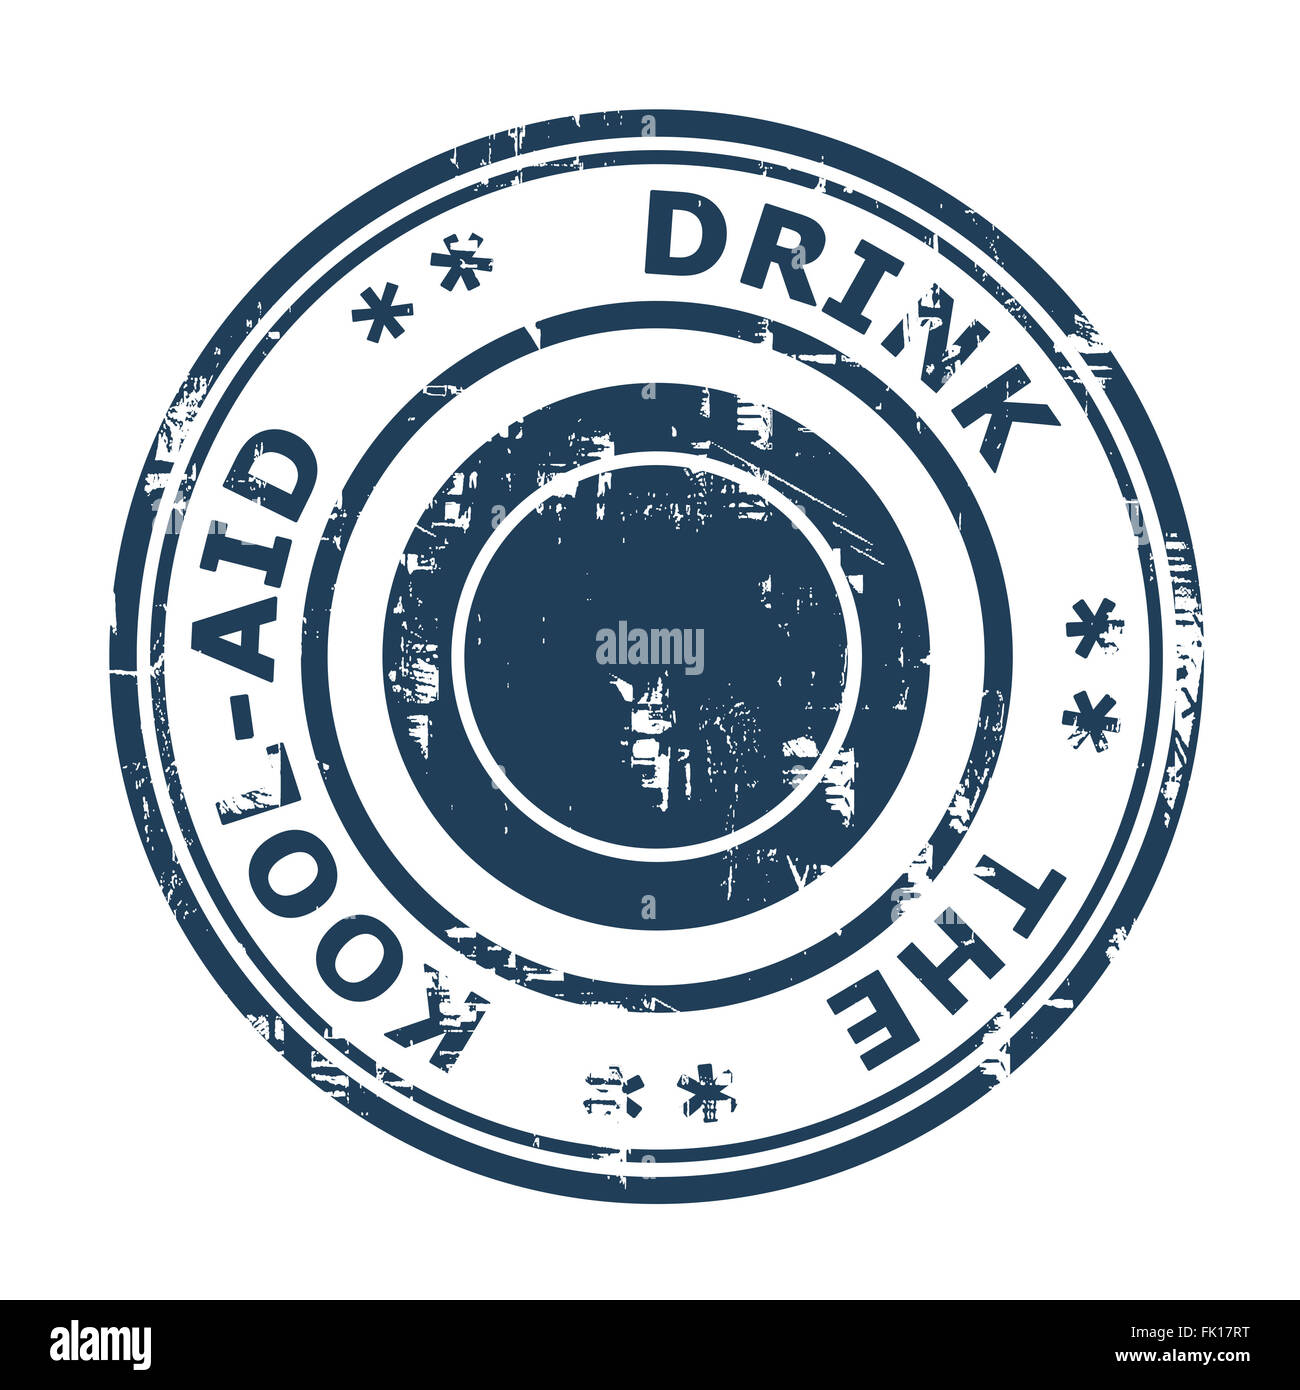 Beba el concepto empresarial Cool-Aid sello aislado sobre un fondo blanco. Foto de stock